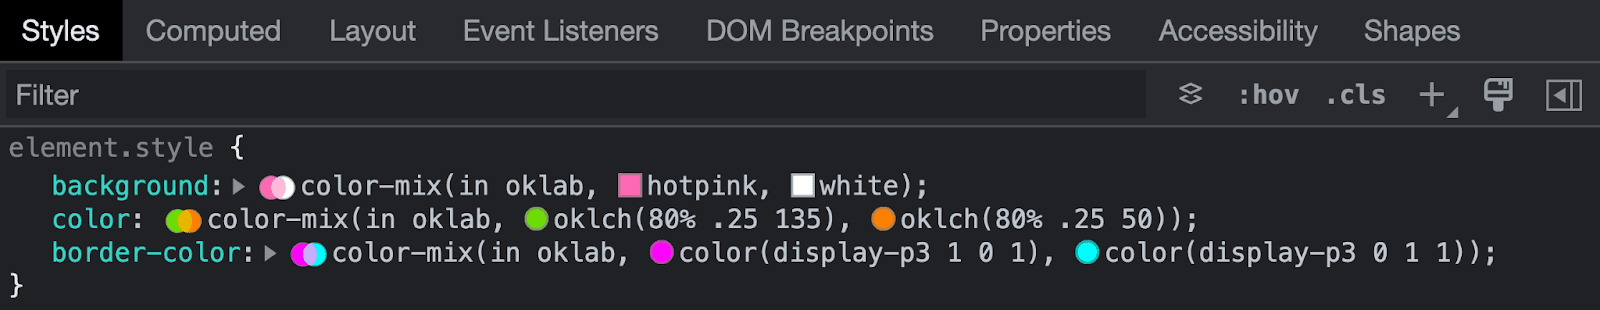 Chrome 開發人員工具檢查顏色混合語法的螢幕截圖。